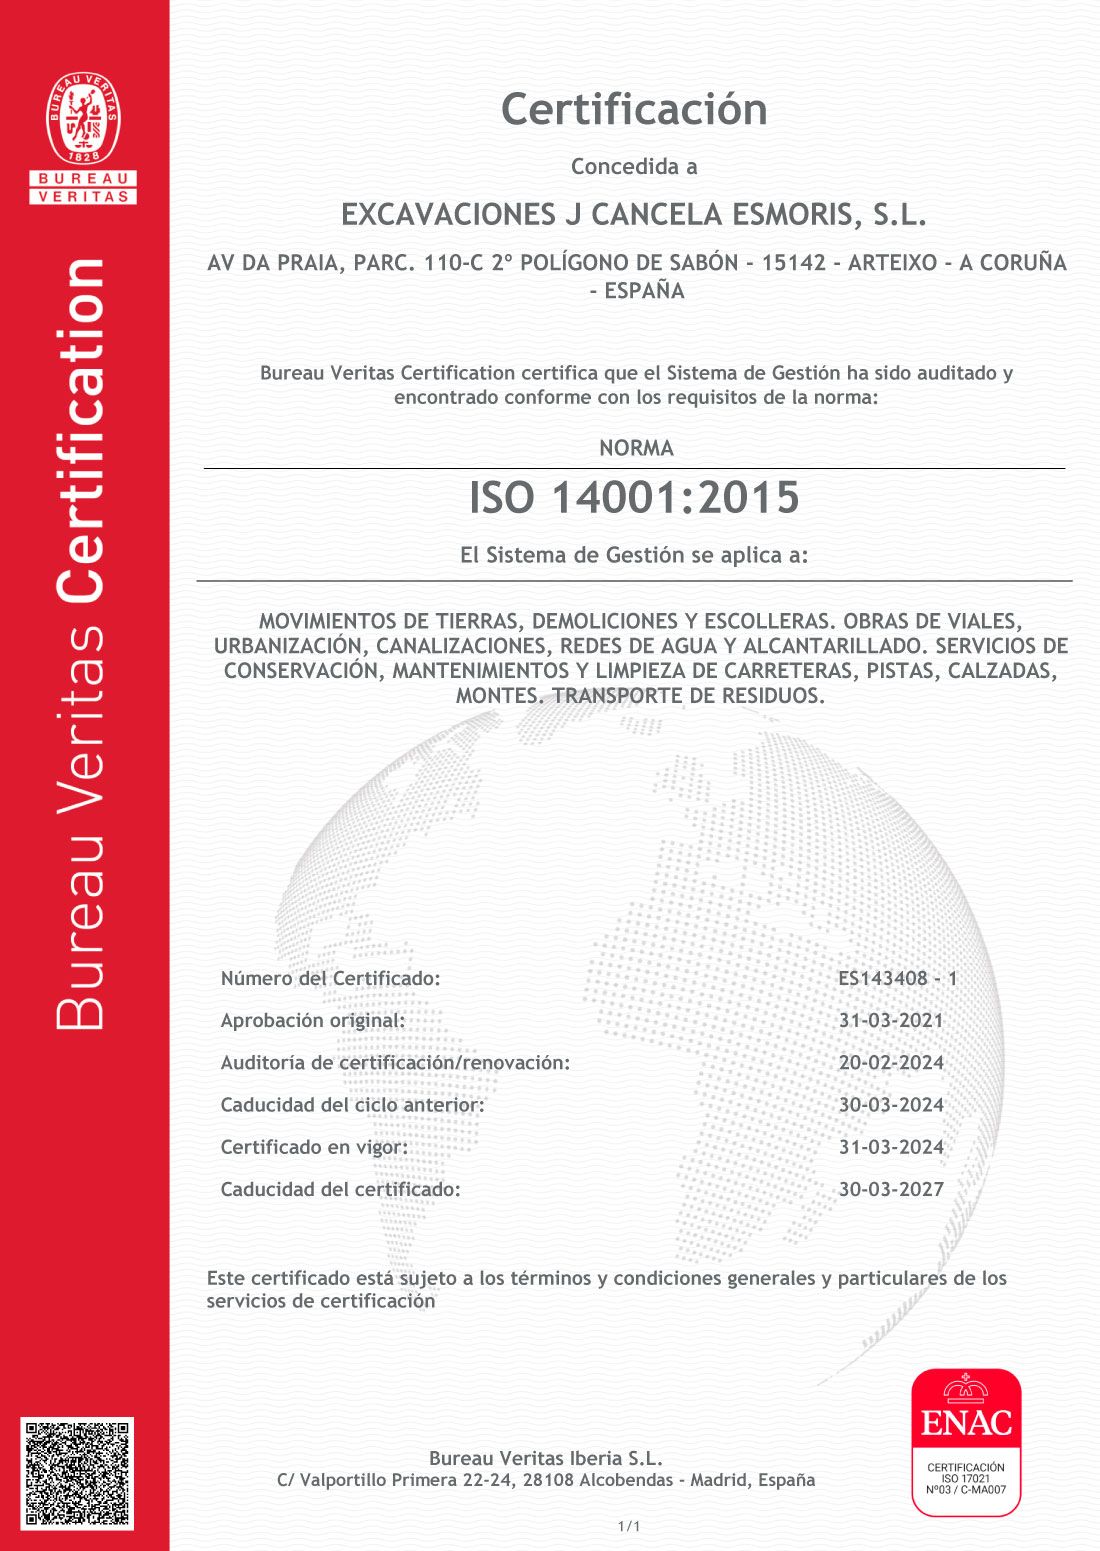 Certificados de Excavaciones J. Cancela Esmorís, S.L. en A Coruña